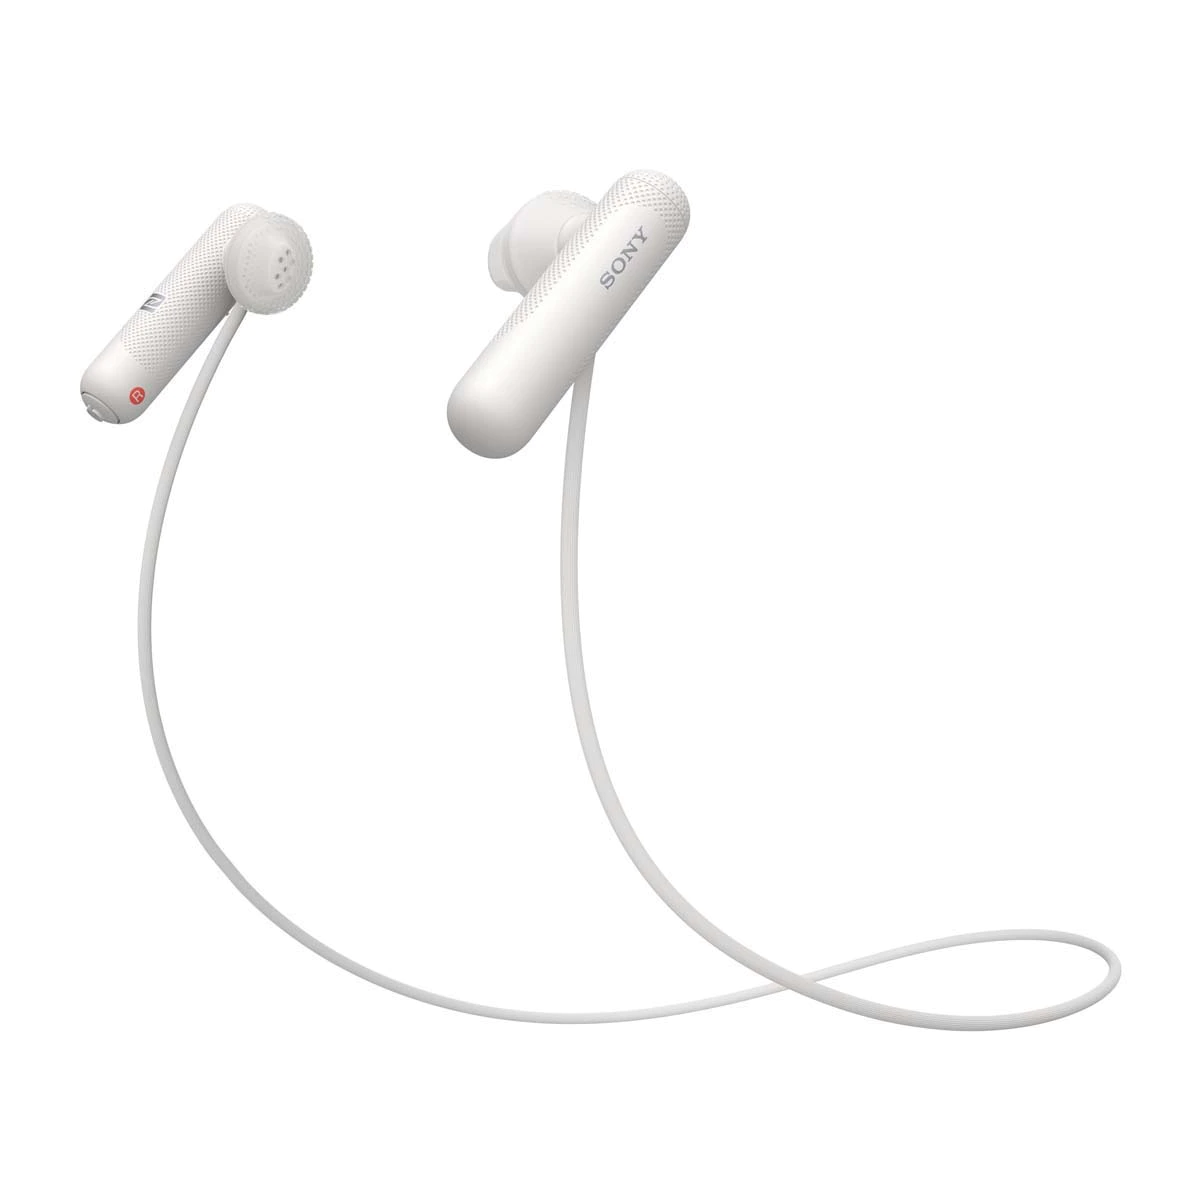 Auriculares deportivos de botón Sony WISP500W Blanco con Bluetooth y NFC con micrófono